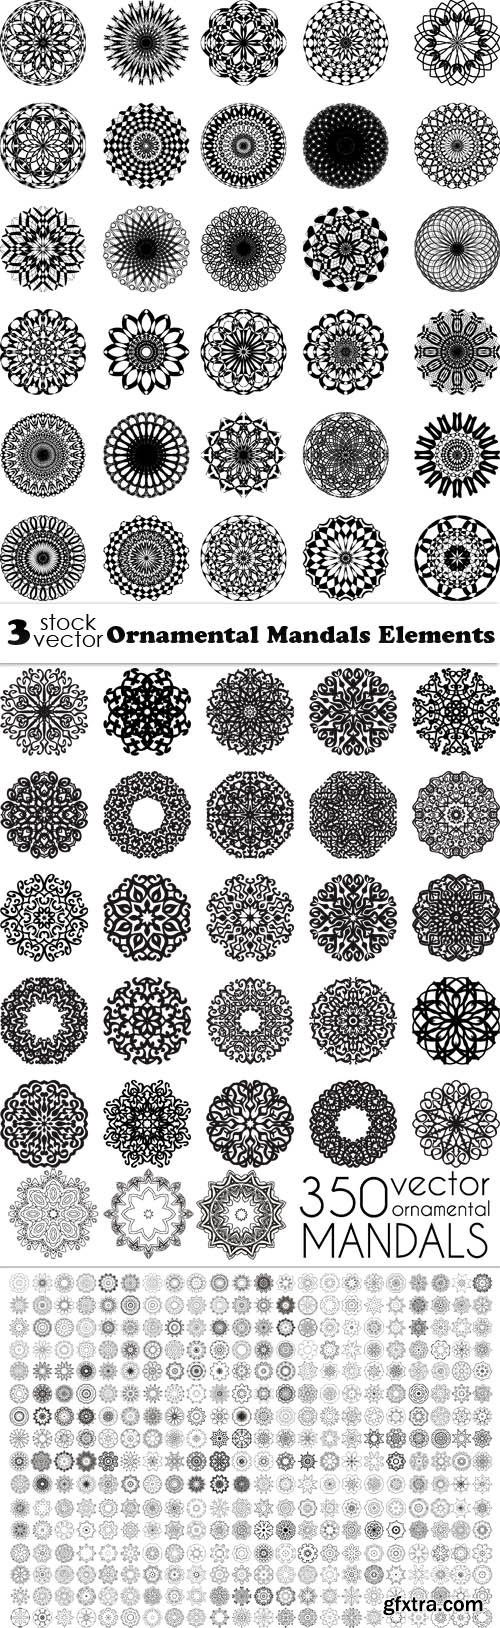 Vectors - Ornamental Mandalas Elements